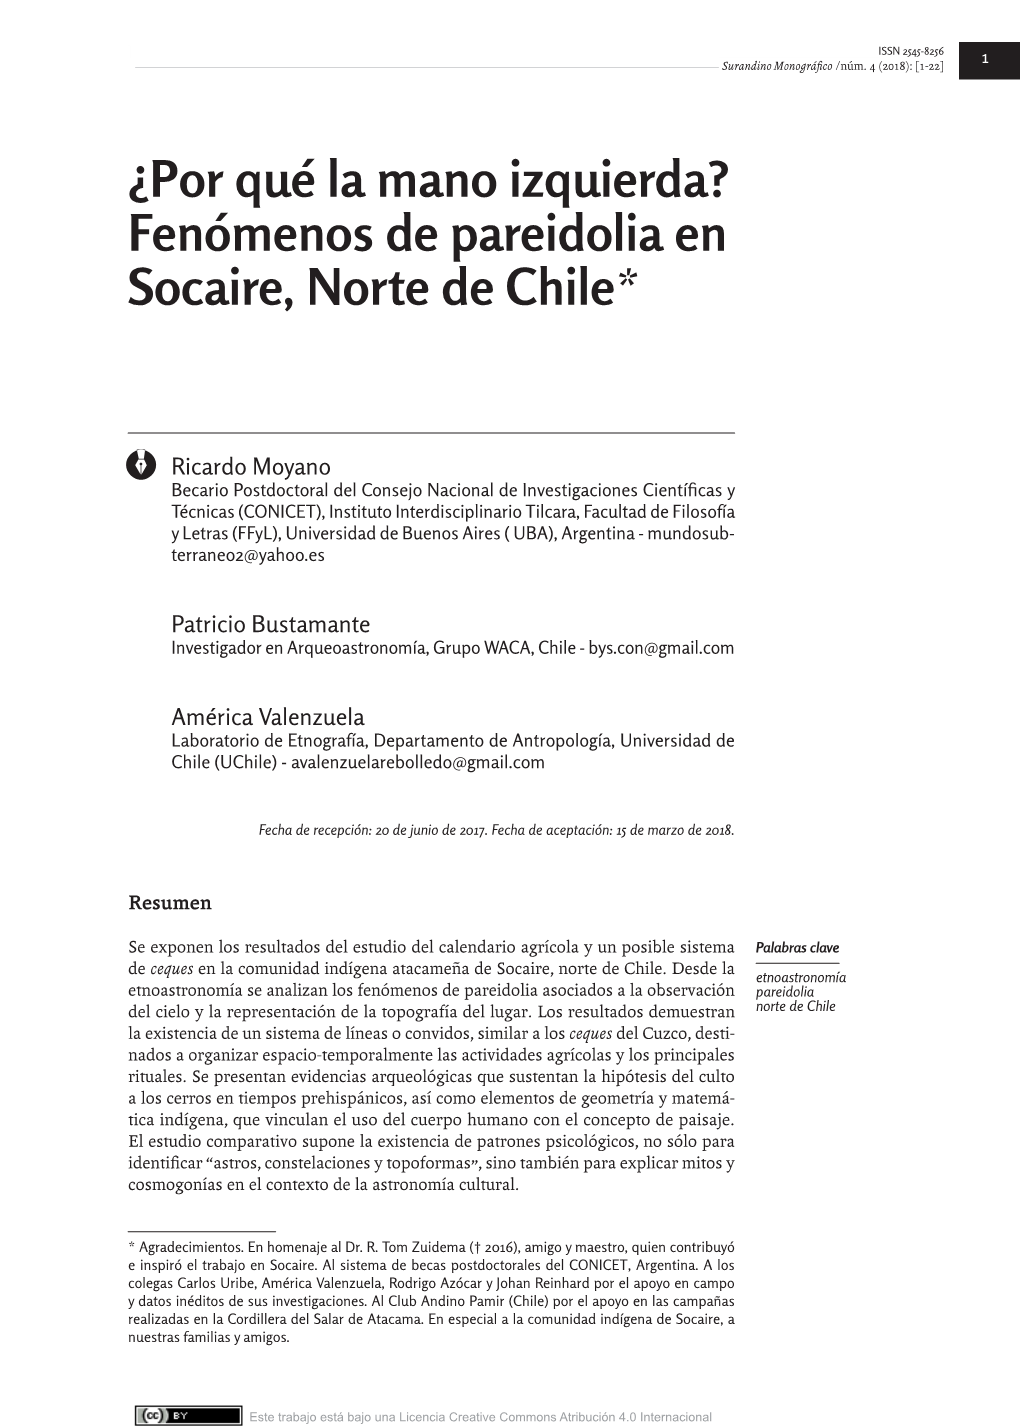 Fenómenos De Pareidolia En Socaire, Norte De Chile*